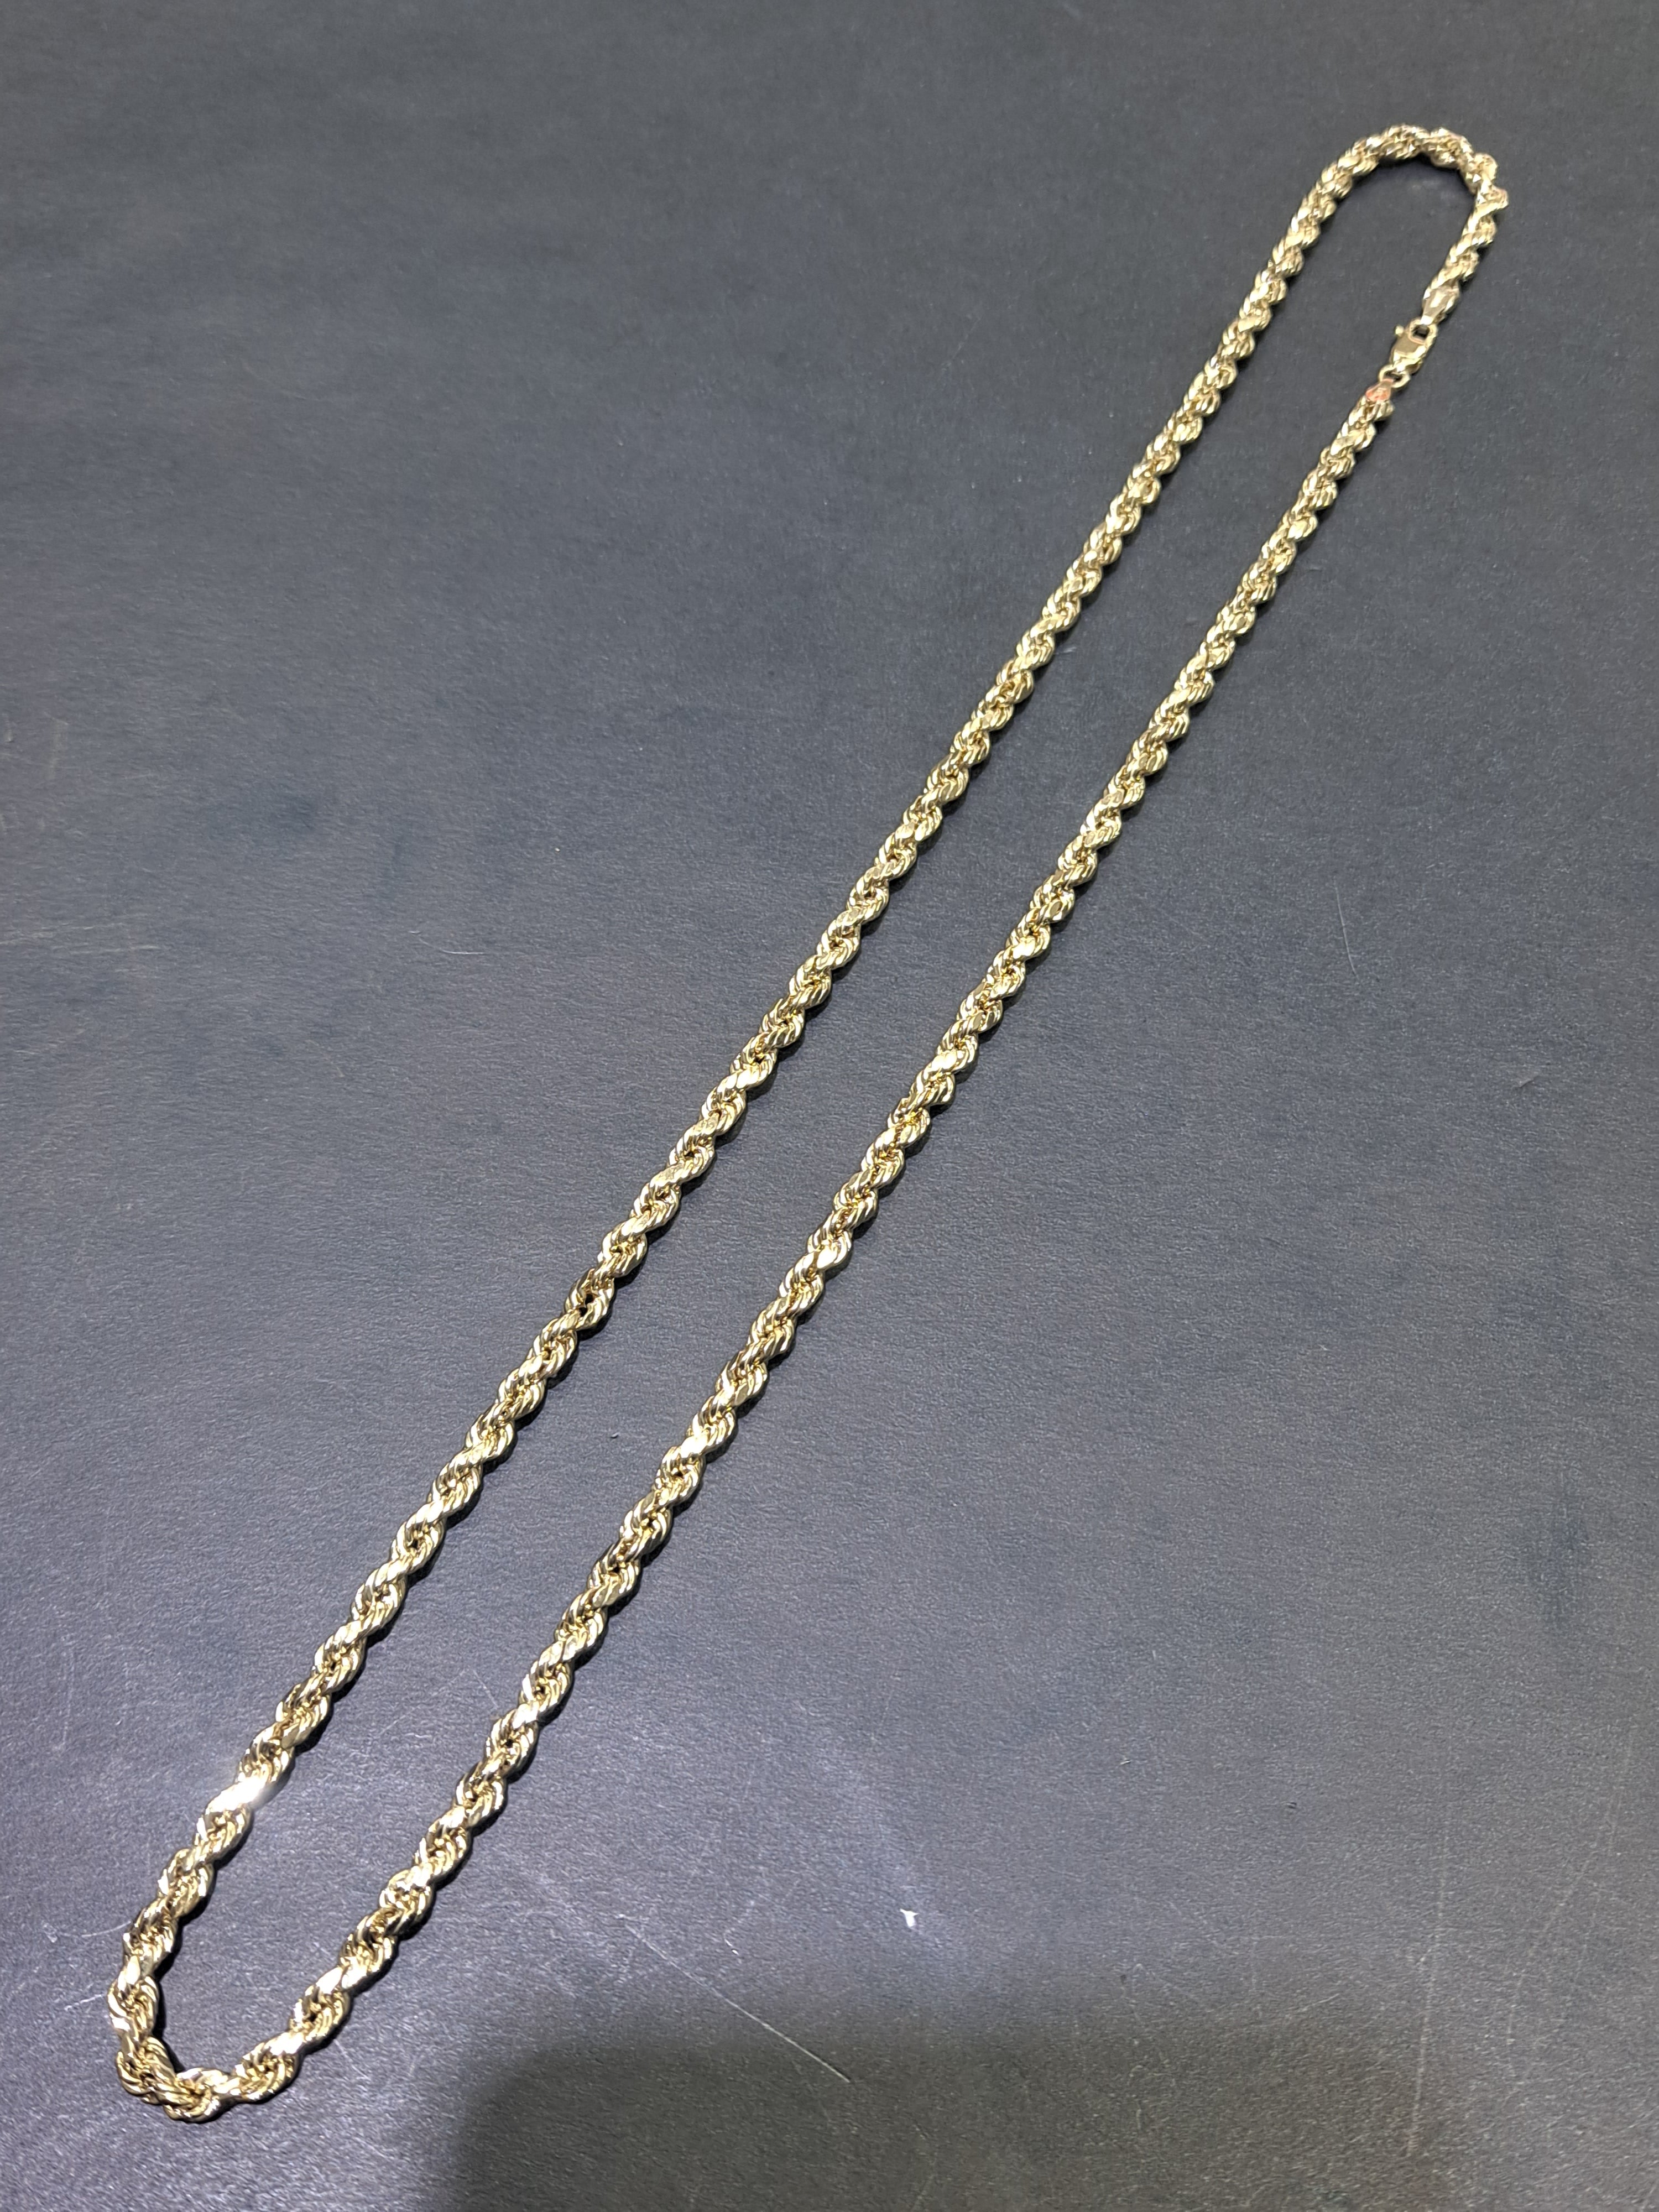 new 10k rope chain italian made